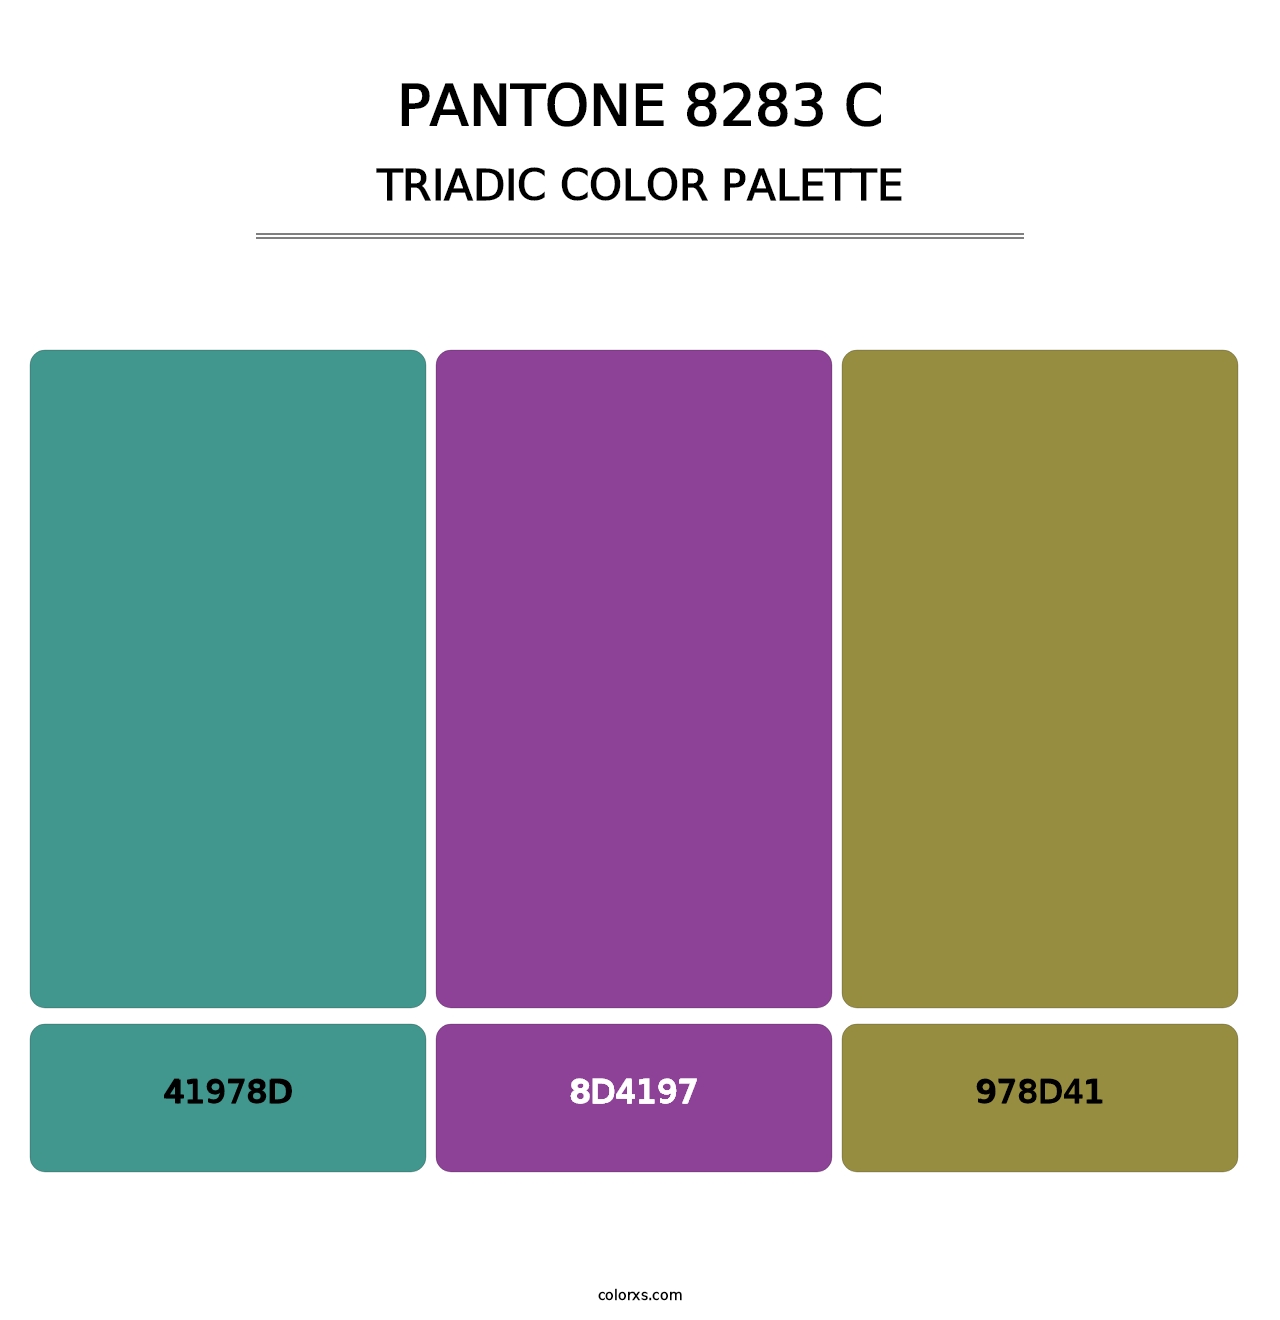 PANTONE 8283 C - Triadic Color Palette